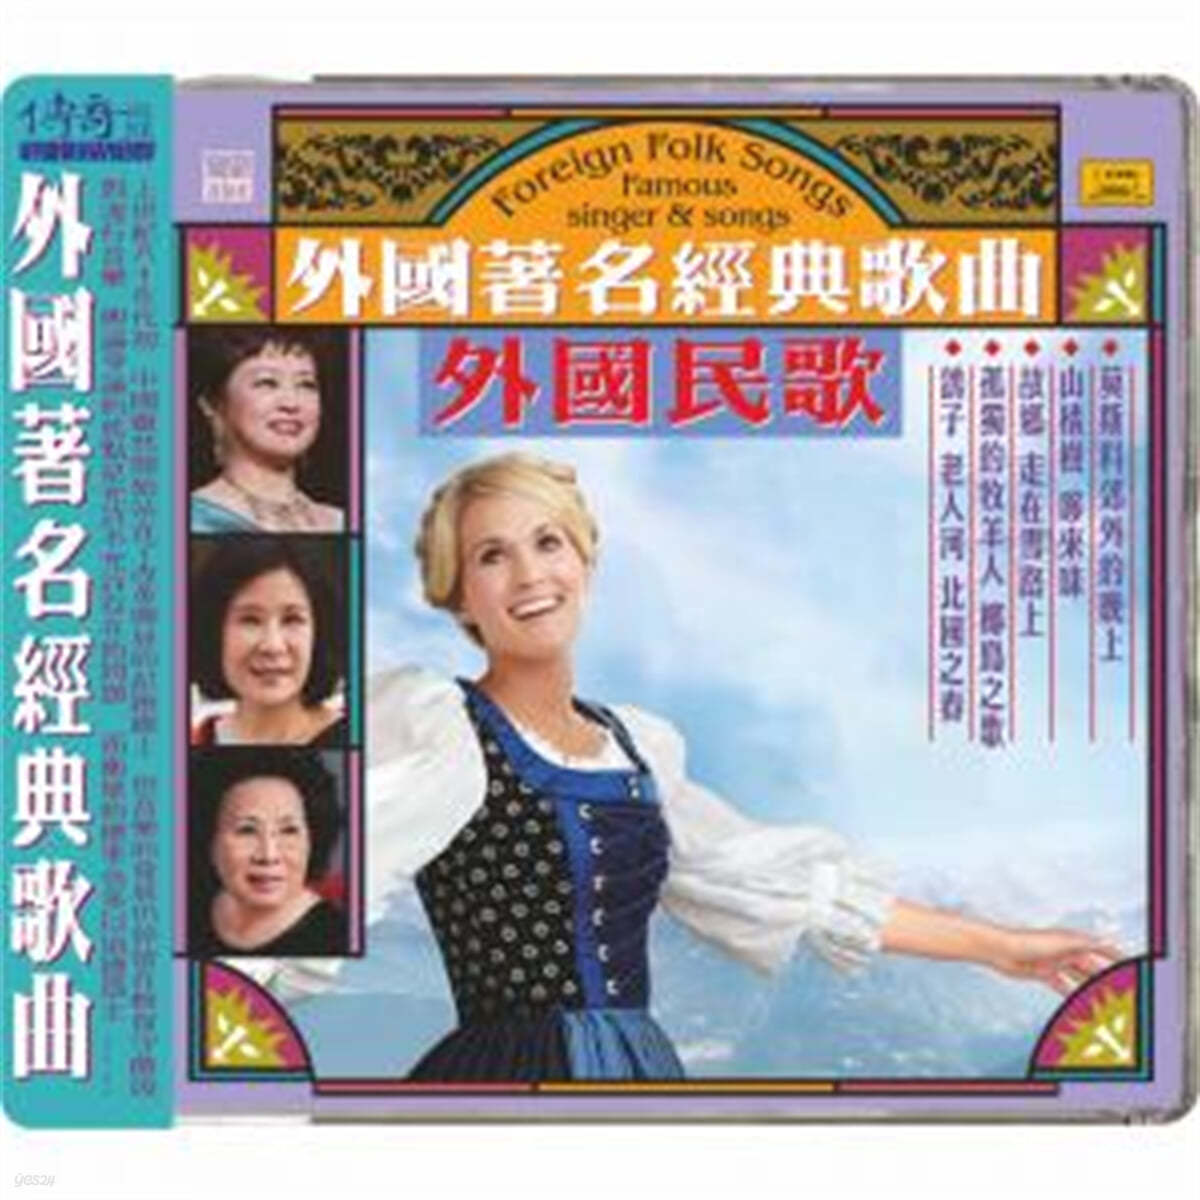 60-80년대 중국 본토의 유명 가수들이 노래한 다양한 나라의 번안가요 모음집 (Foreign Folk Songs : Famous Singer & Songs) 